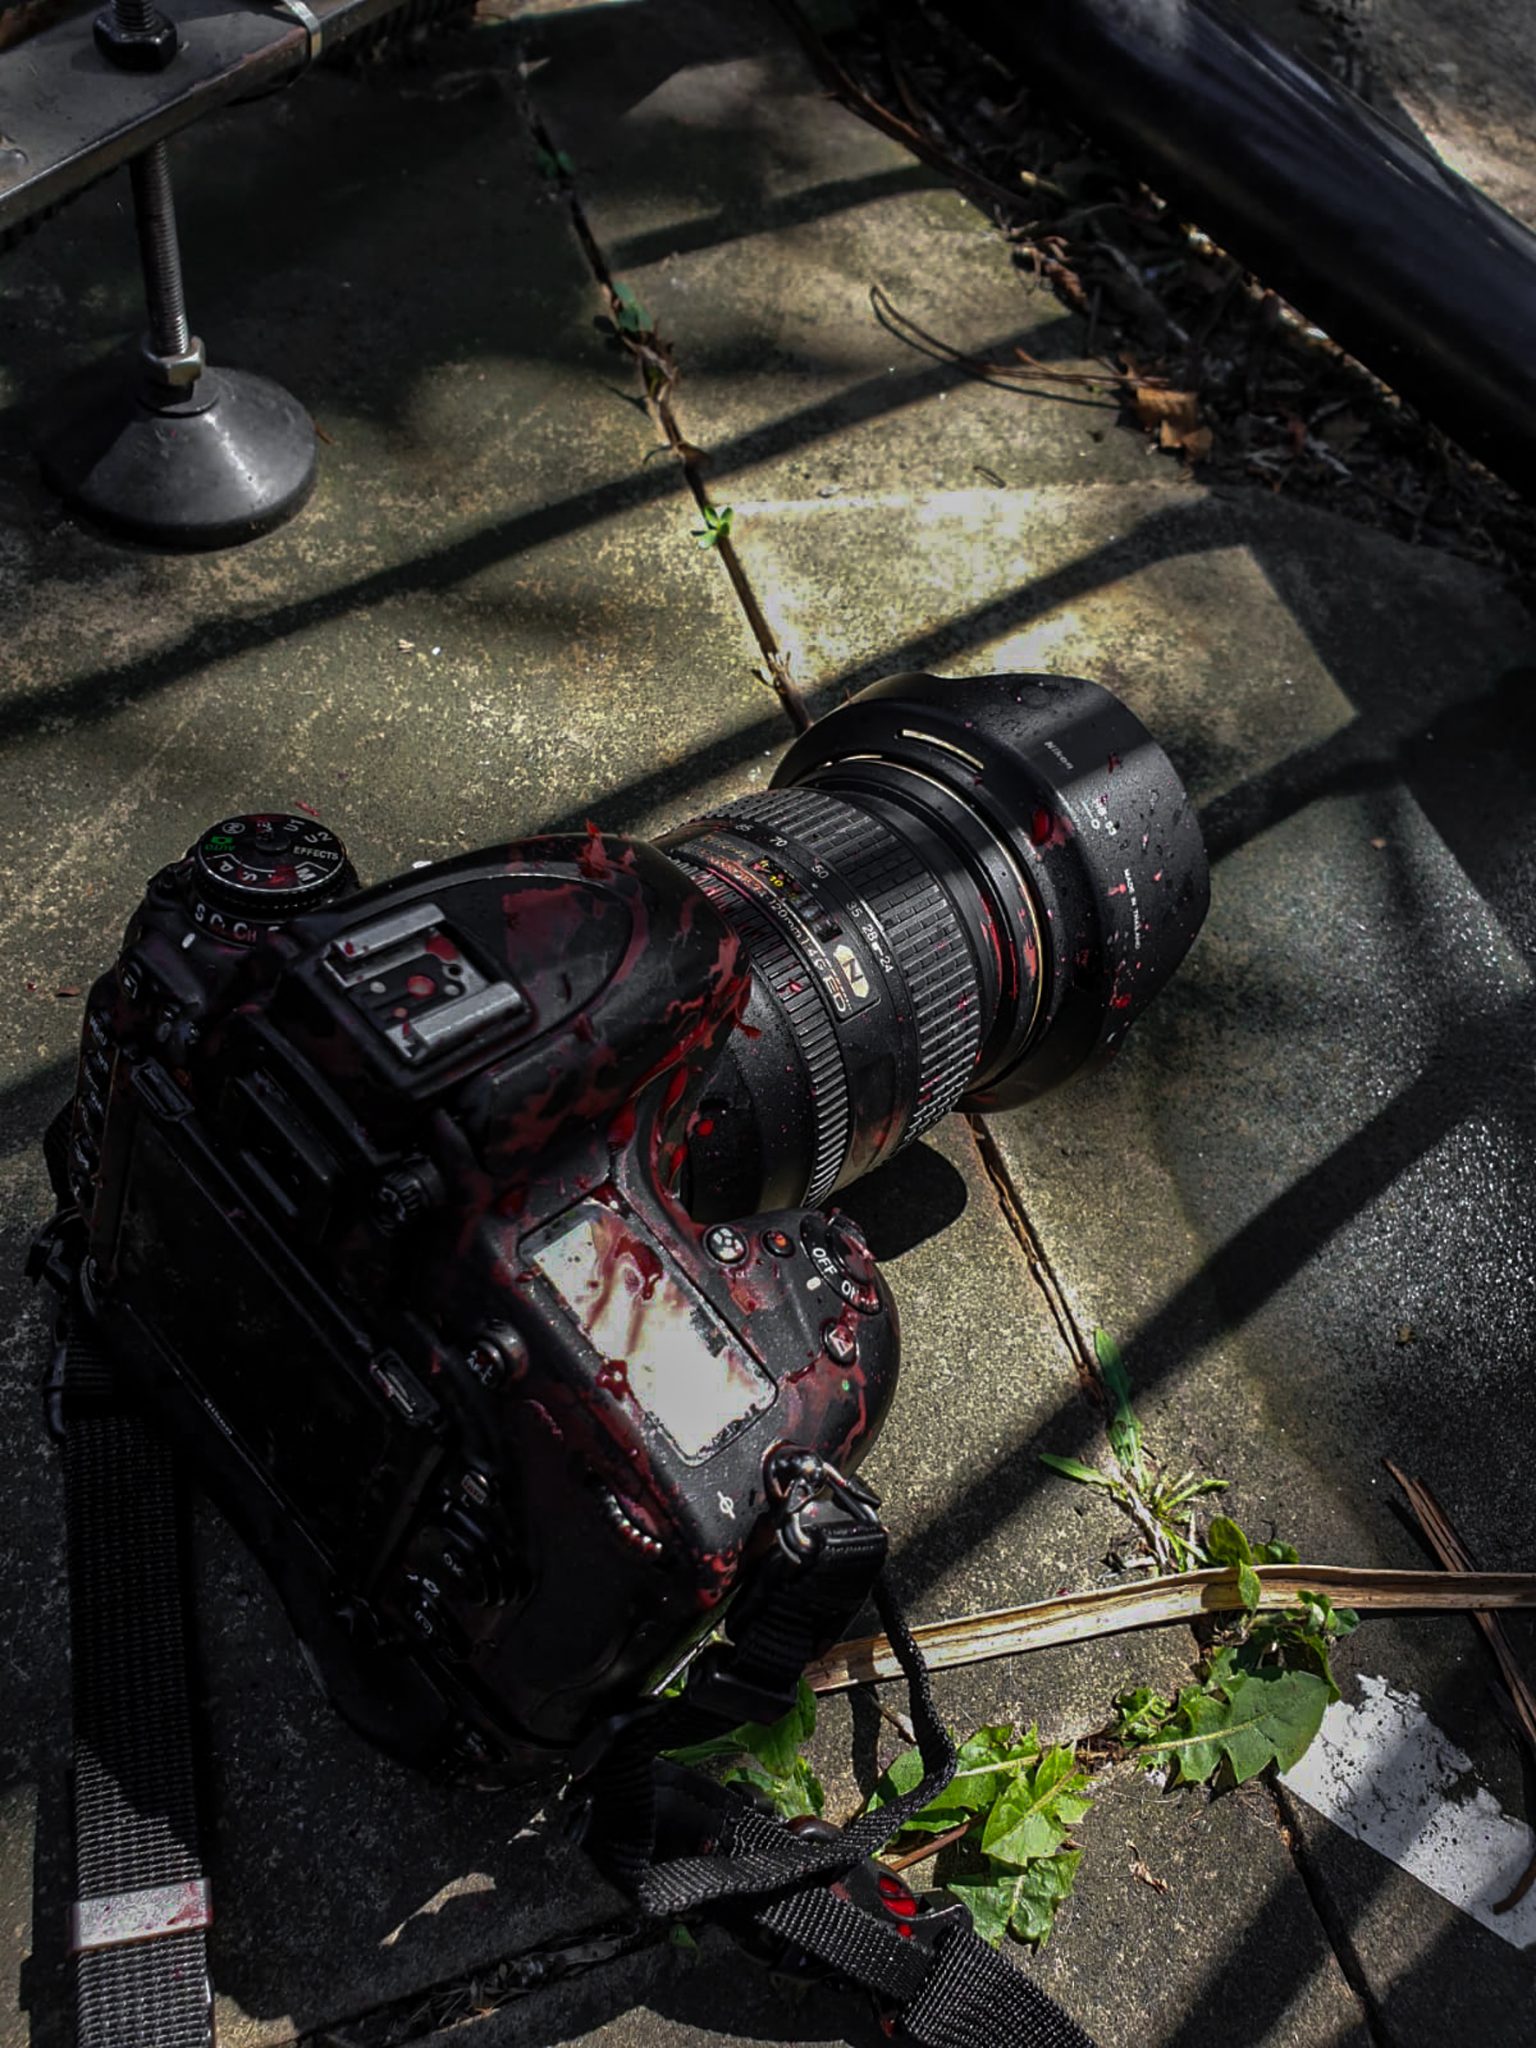 Fotoreporter sotto attacco: una macchina fotografica professionale insanguinata subito dopo un'aggressione